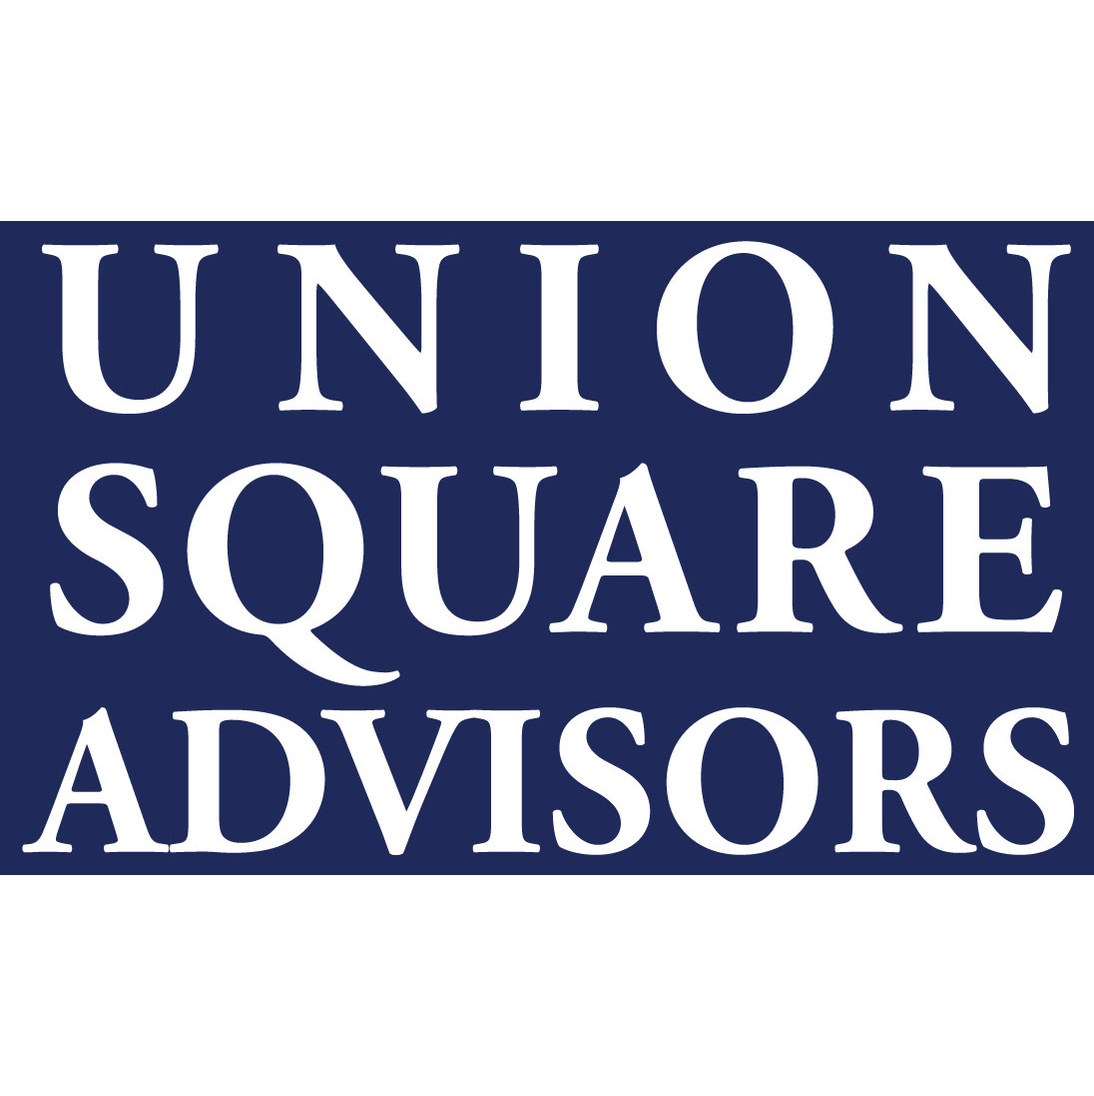 Union Square Advisors